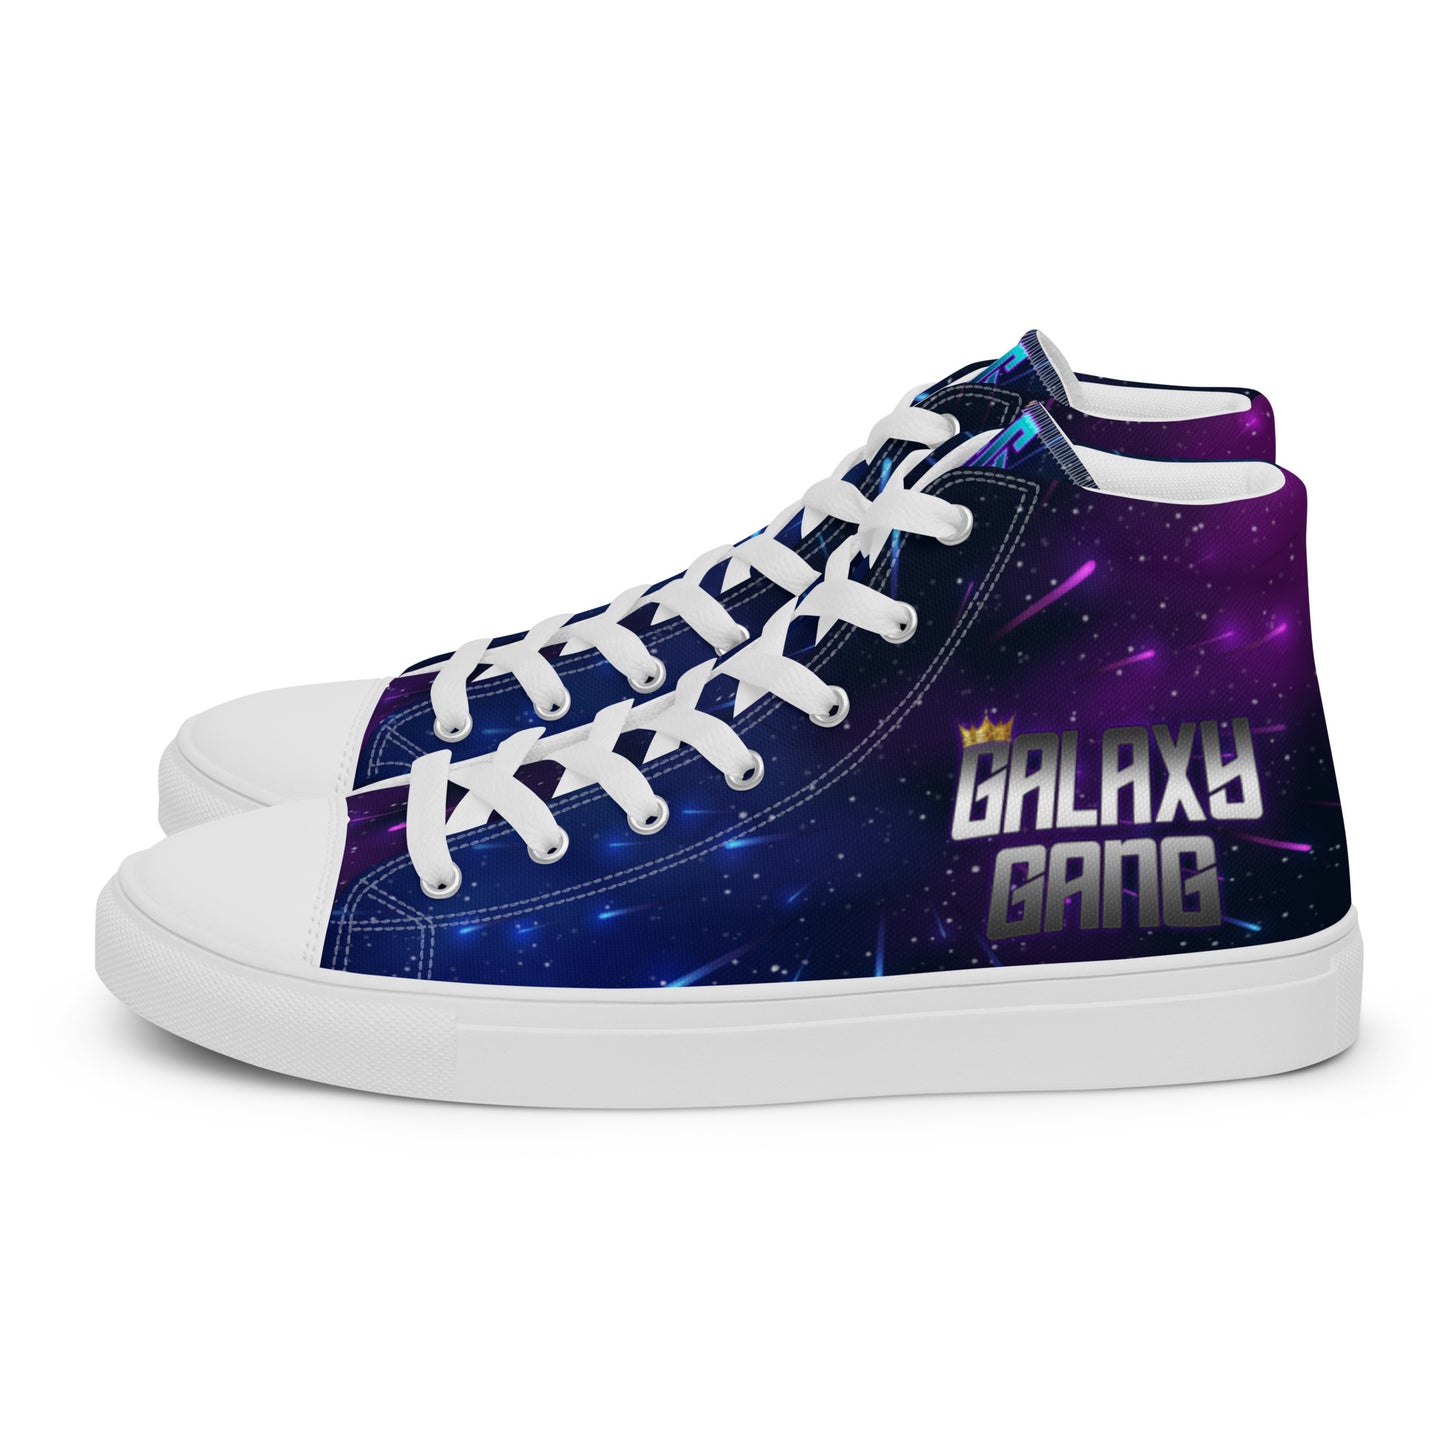 Galaxy Gang High Top Nebula Shoes